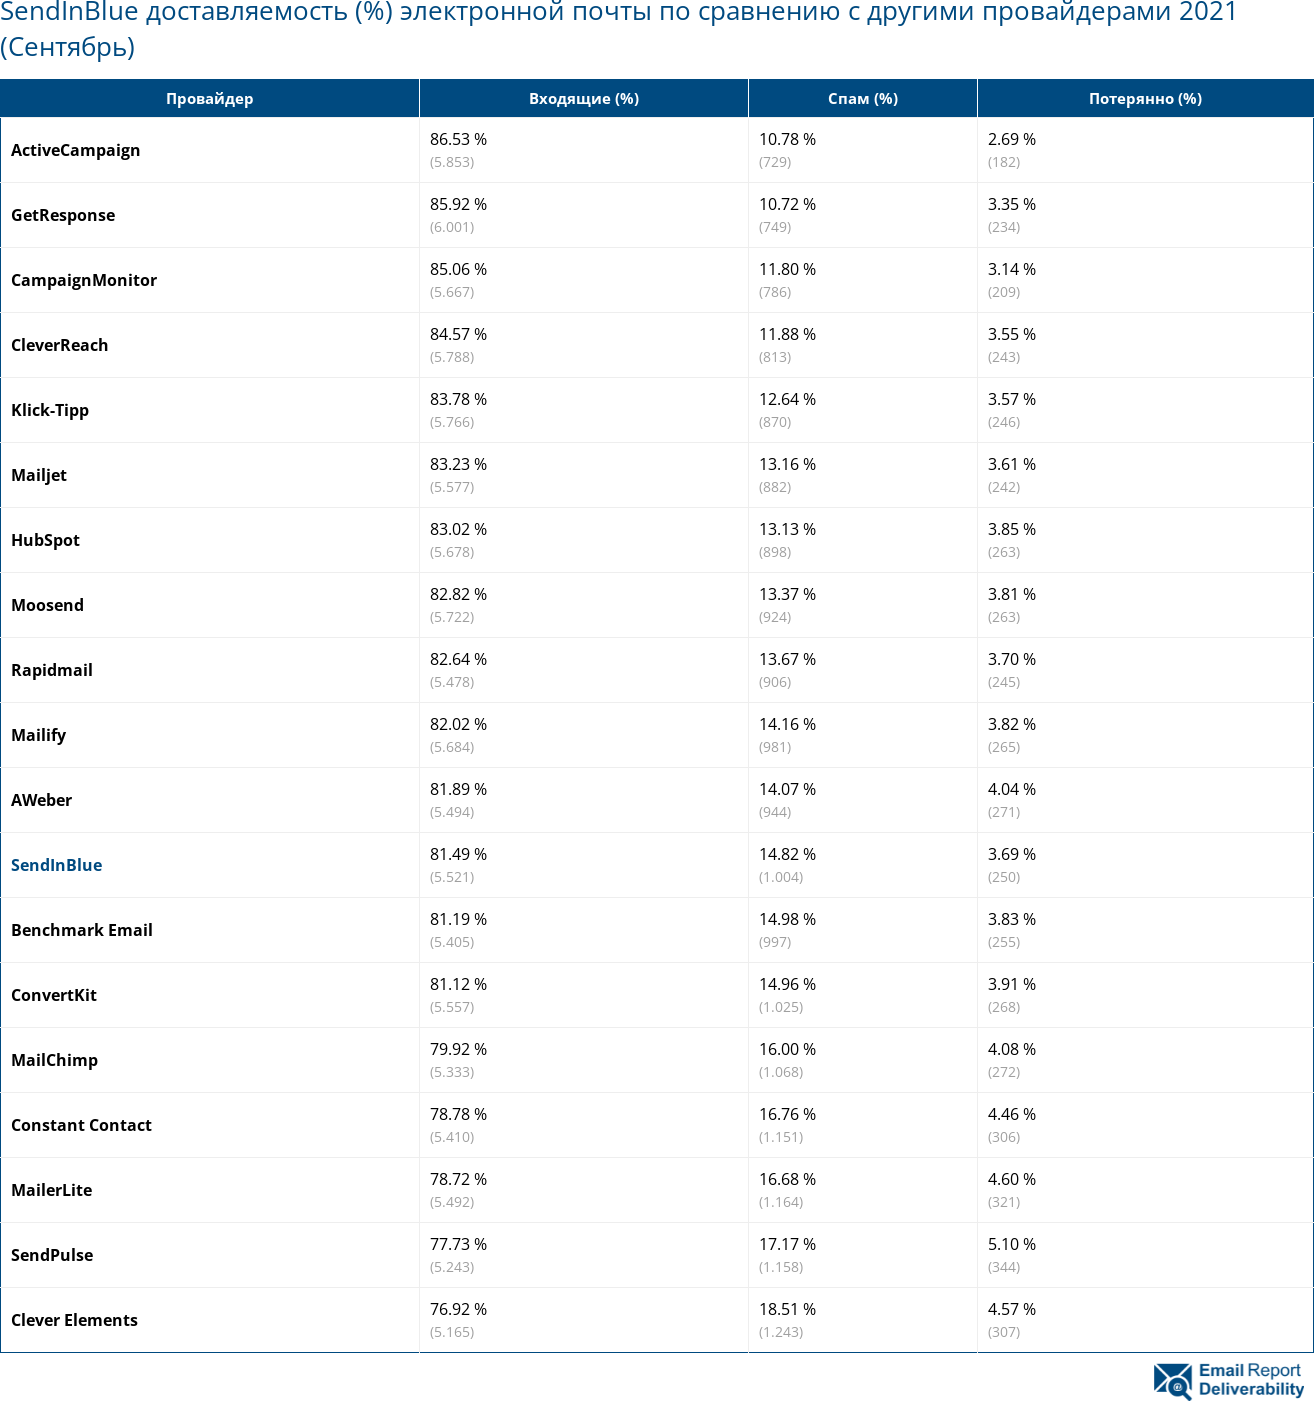 SendInBlue доставляемость (%) электронной почты по сравнению с другими провайдерами 2021 (Сентябрь)